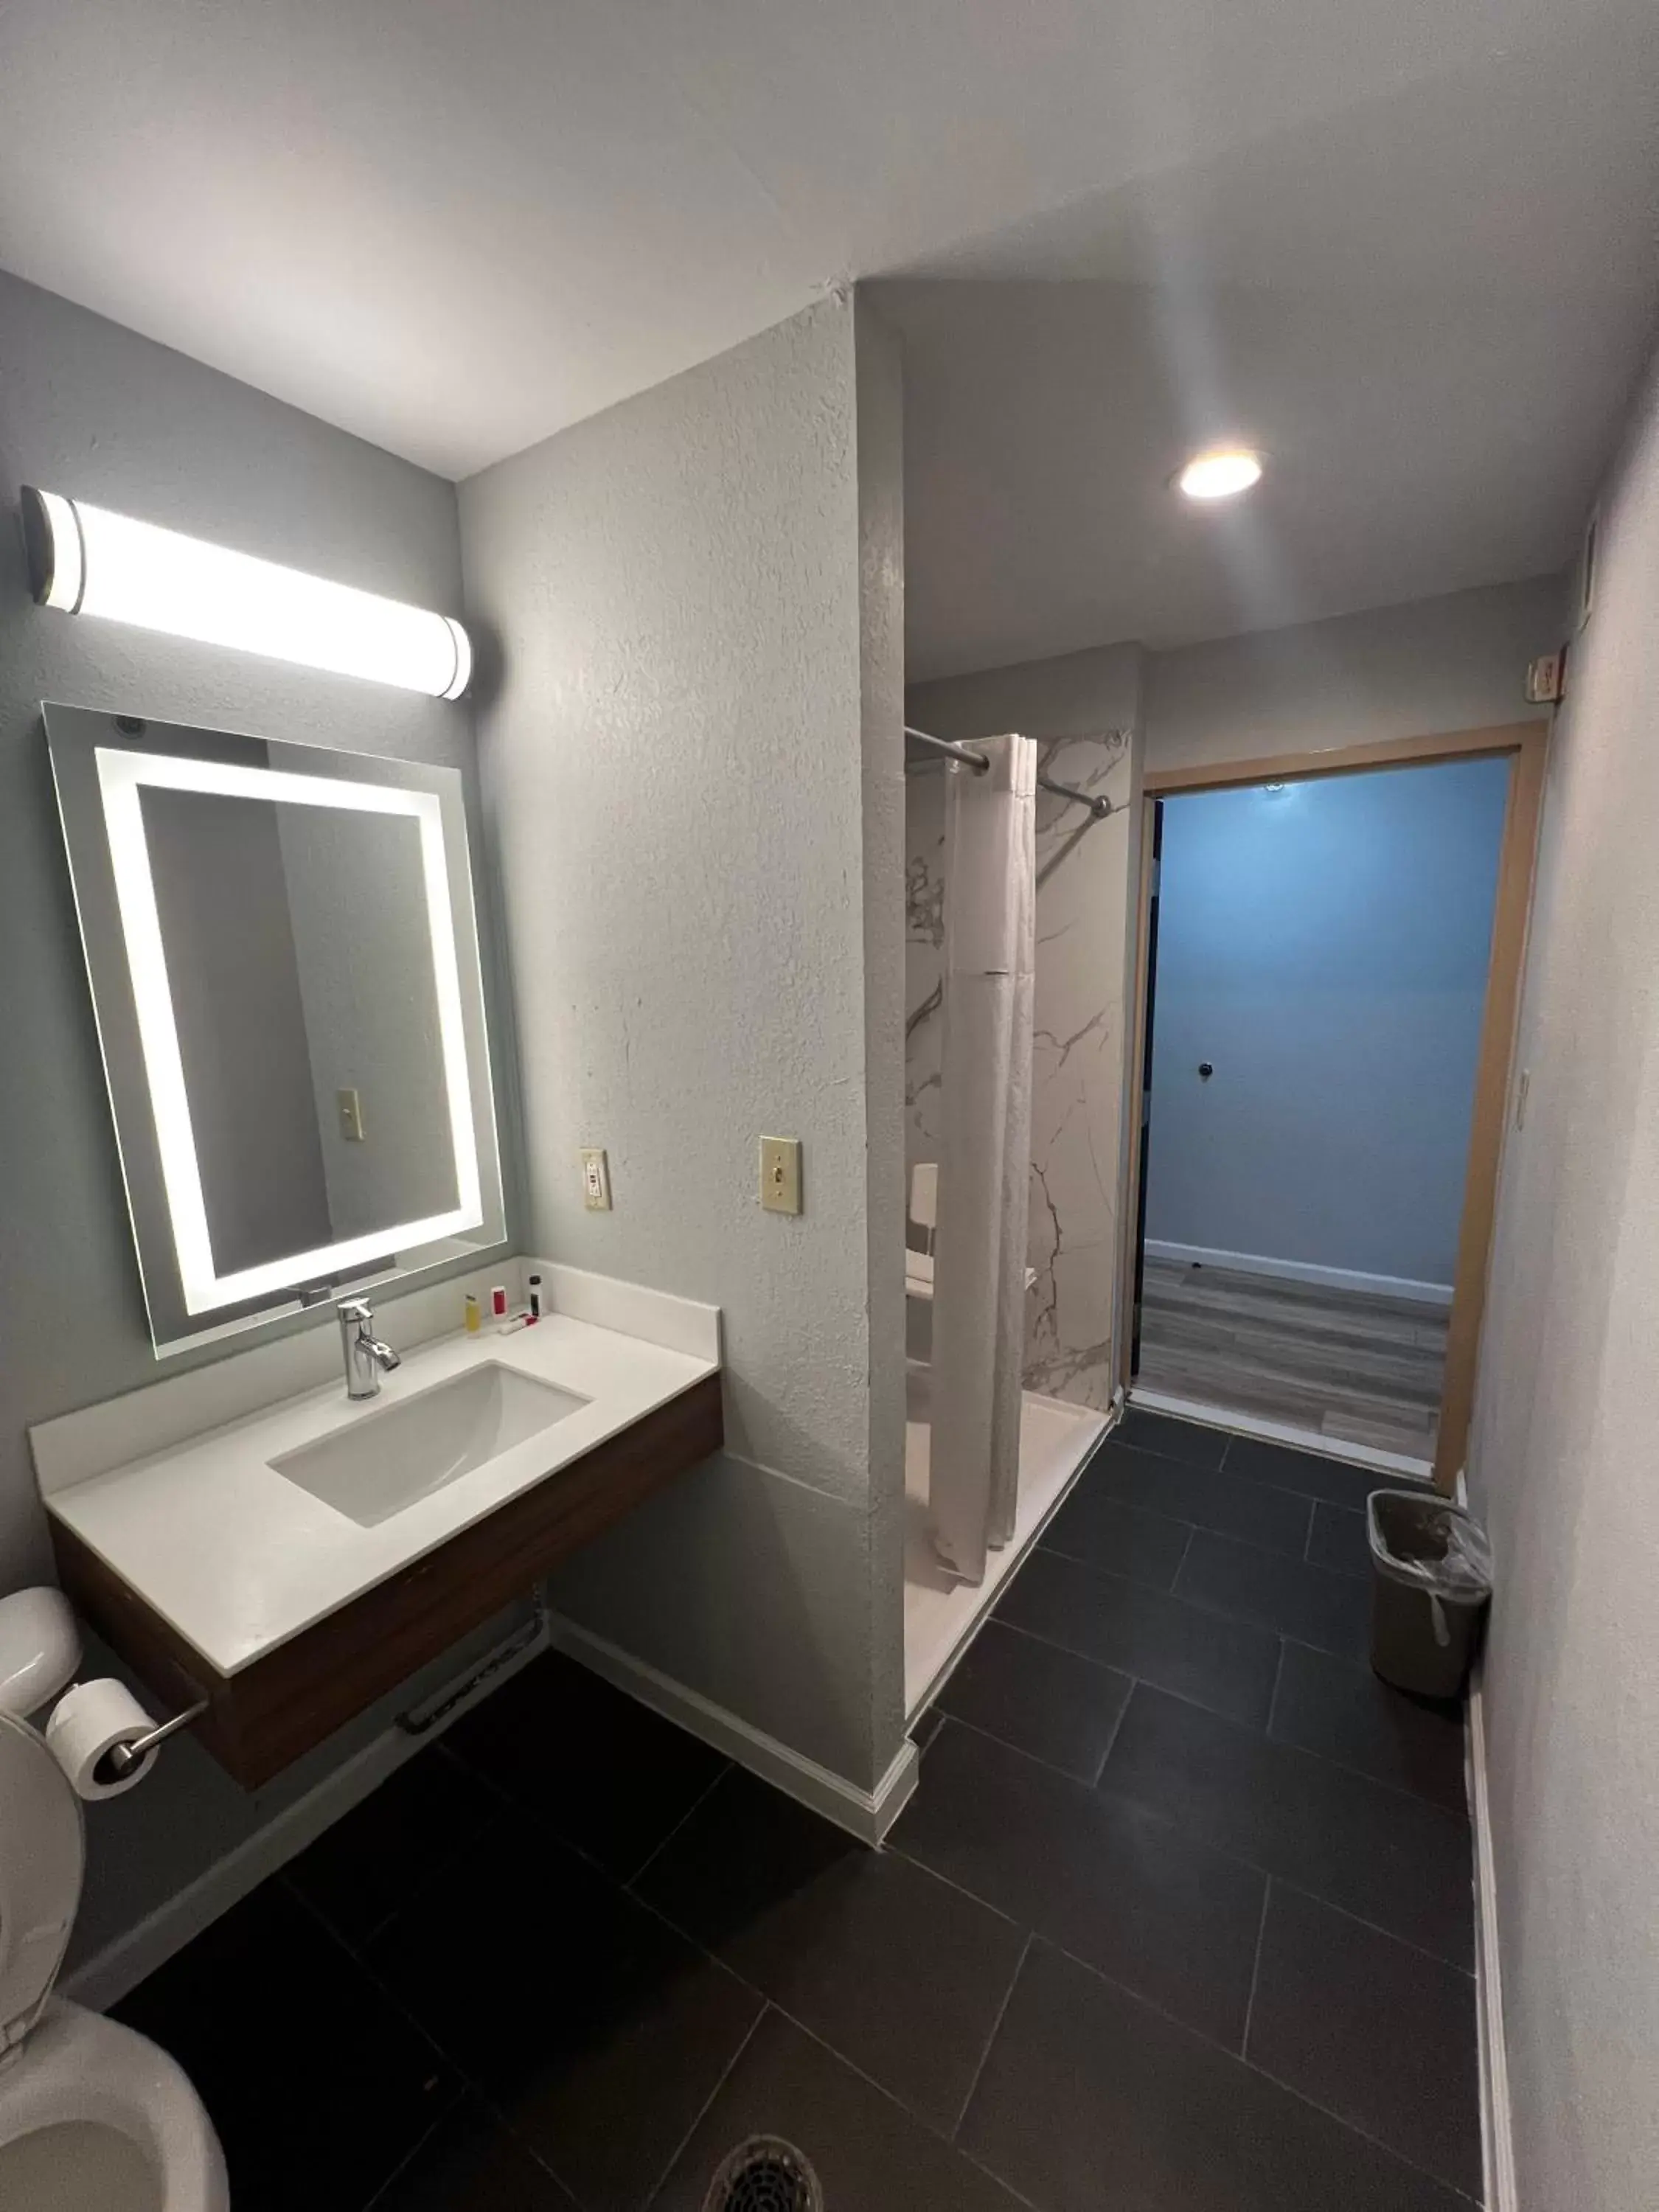 Shower, Bathroom in Microtel Inn by Wyndham Atlanta Airport